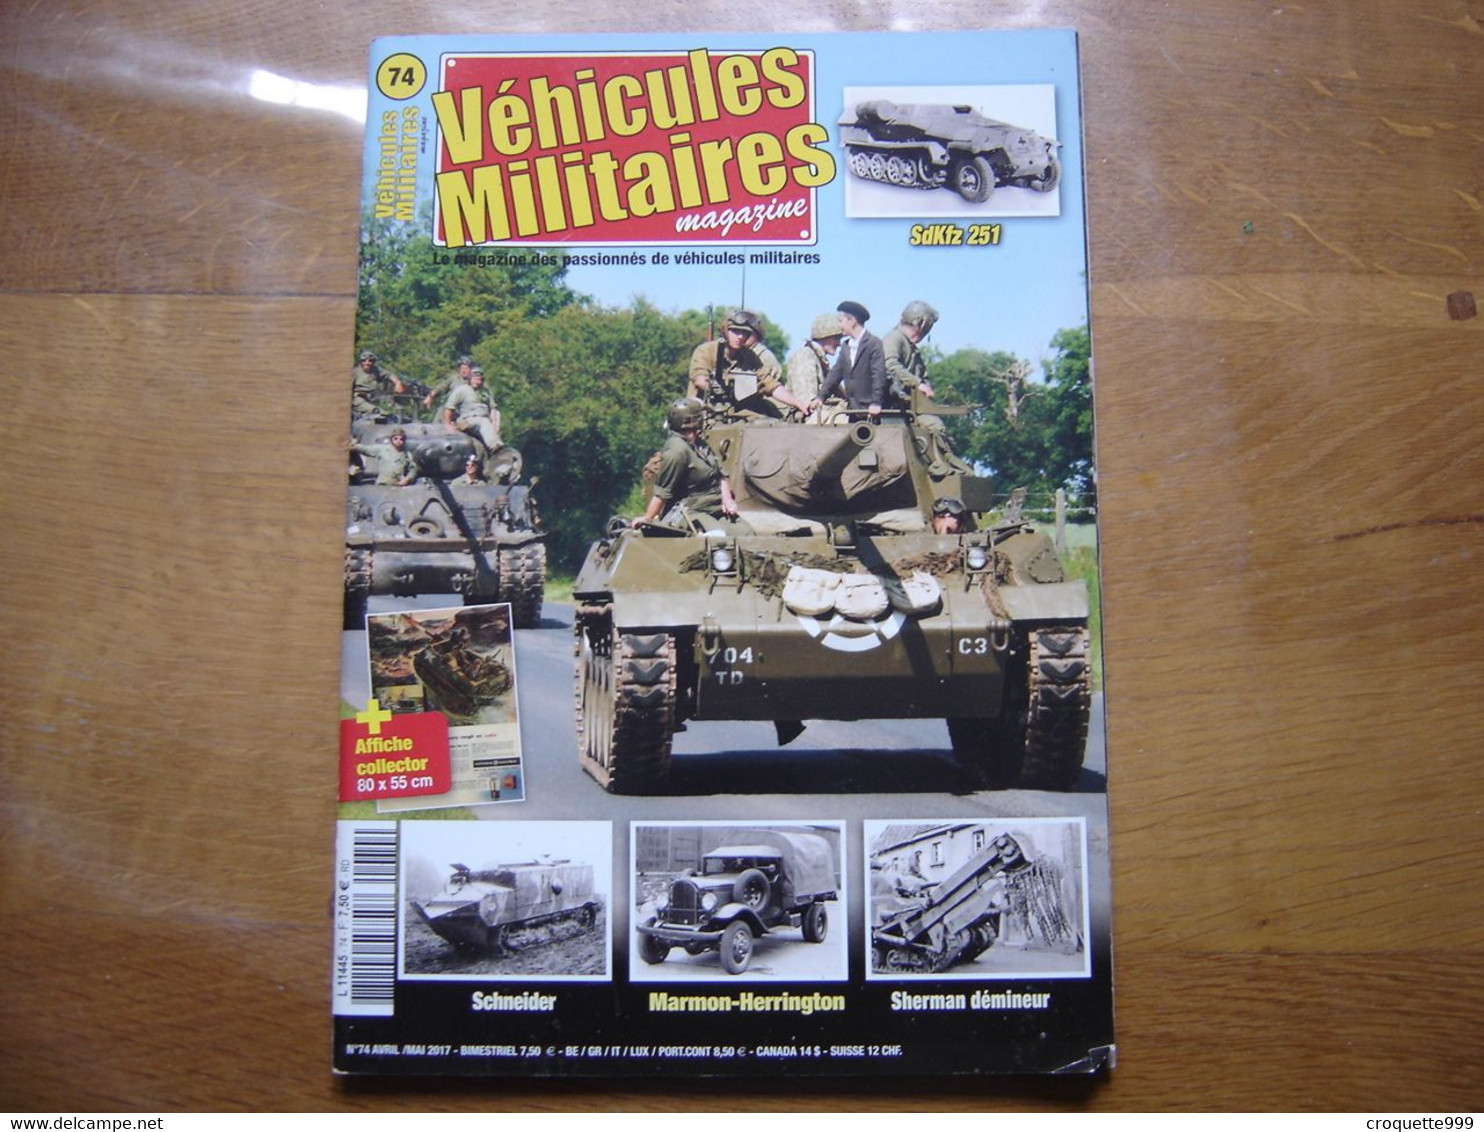 VEHICULES MILITAIRES MAGAZINE 74 Materiel Armee Sommaire En Photo AFFICHE POSTER - Armas